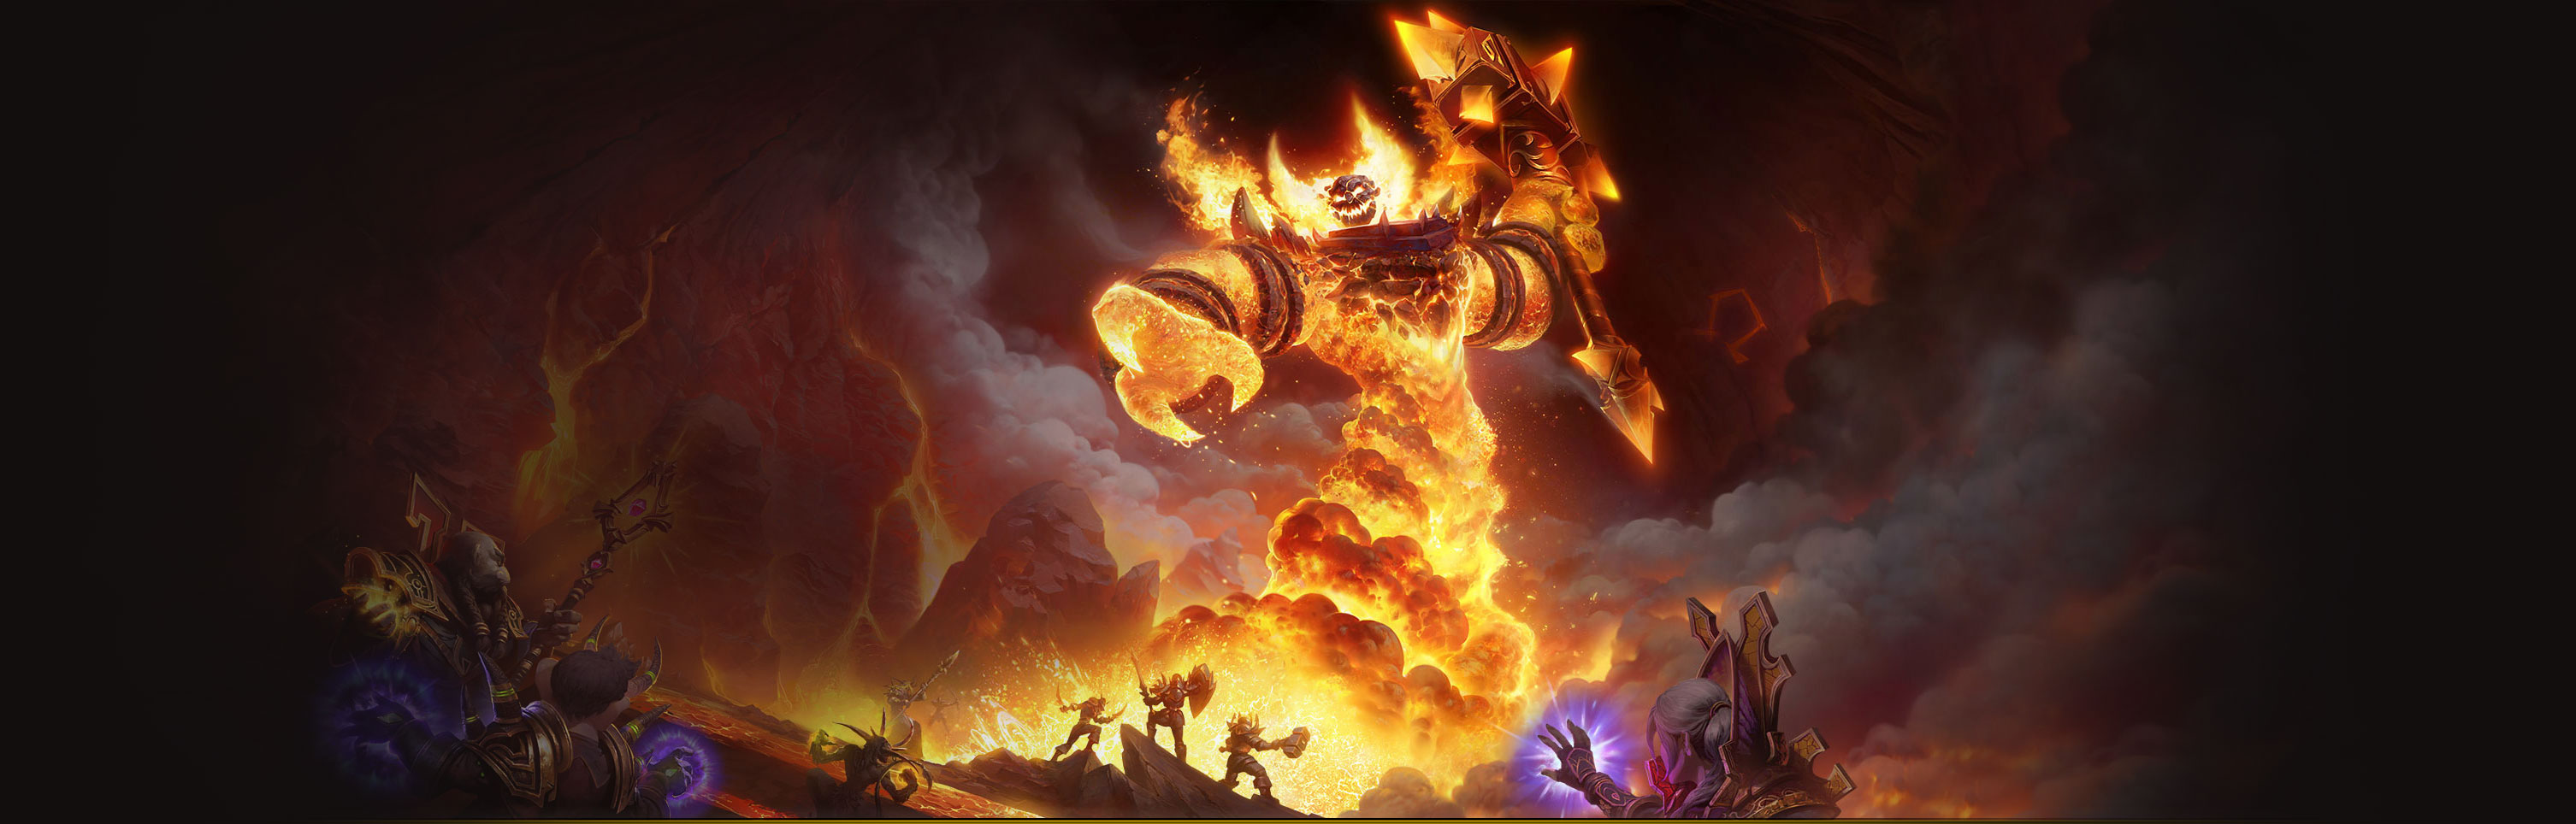 World Of Warcraft Background (78+ images)